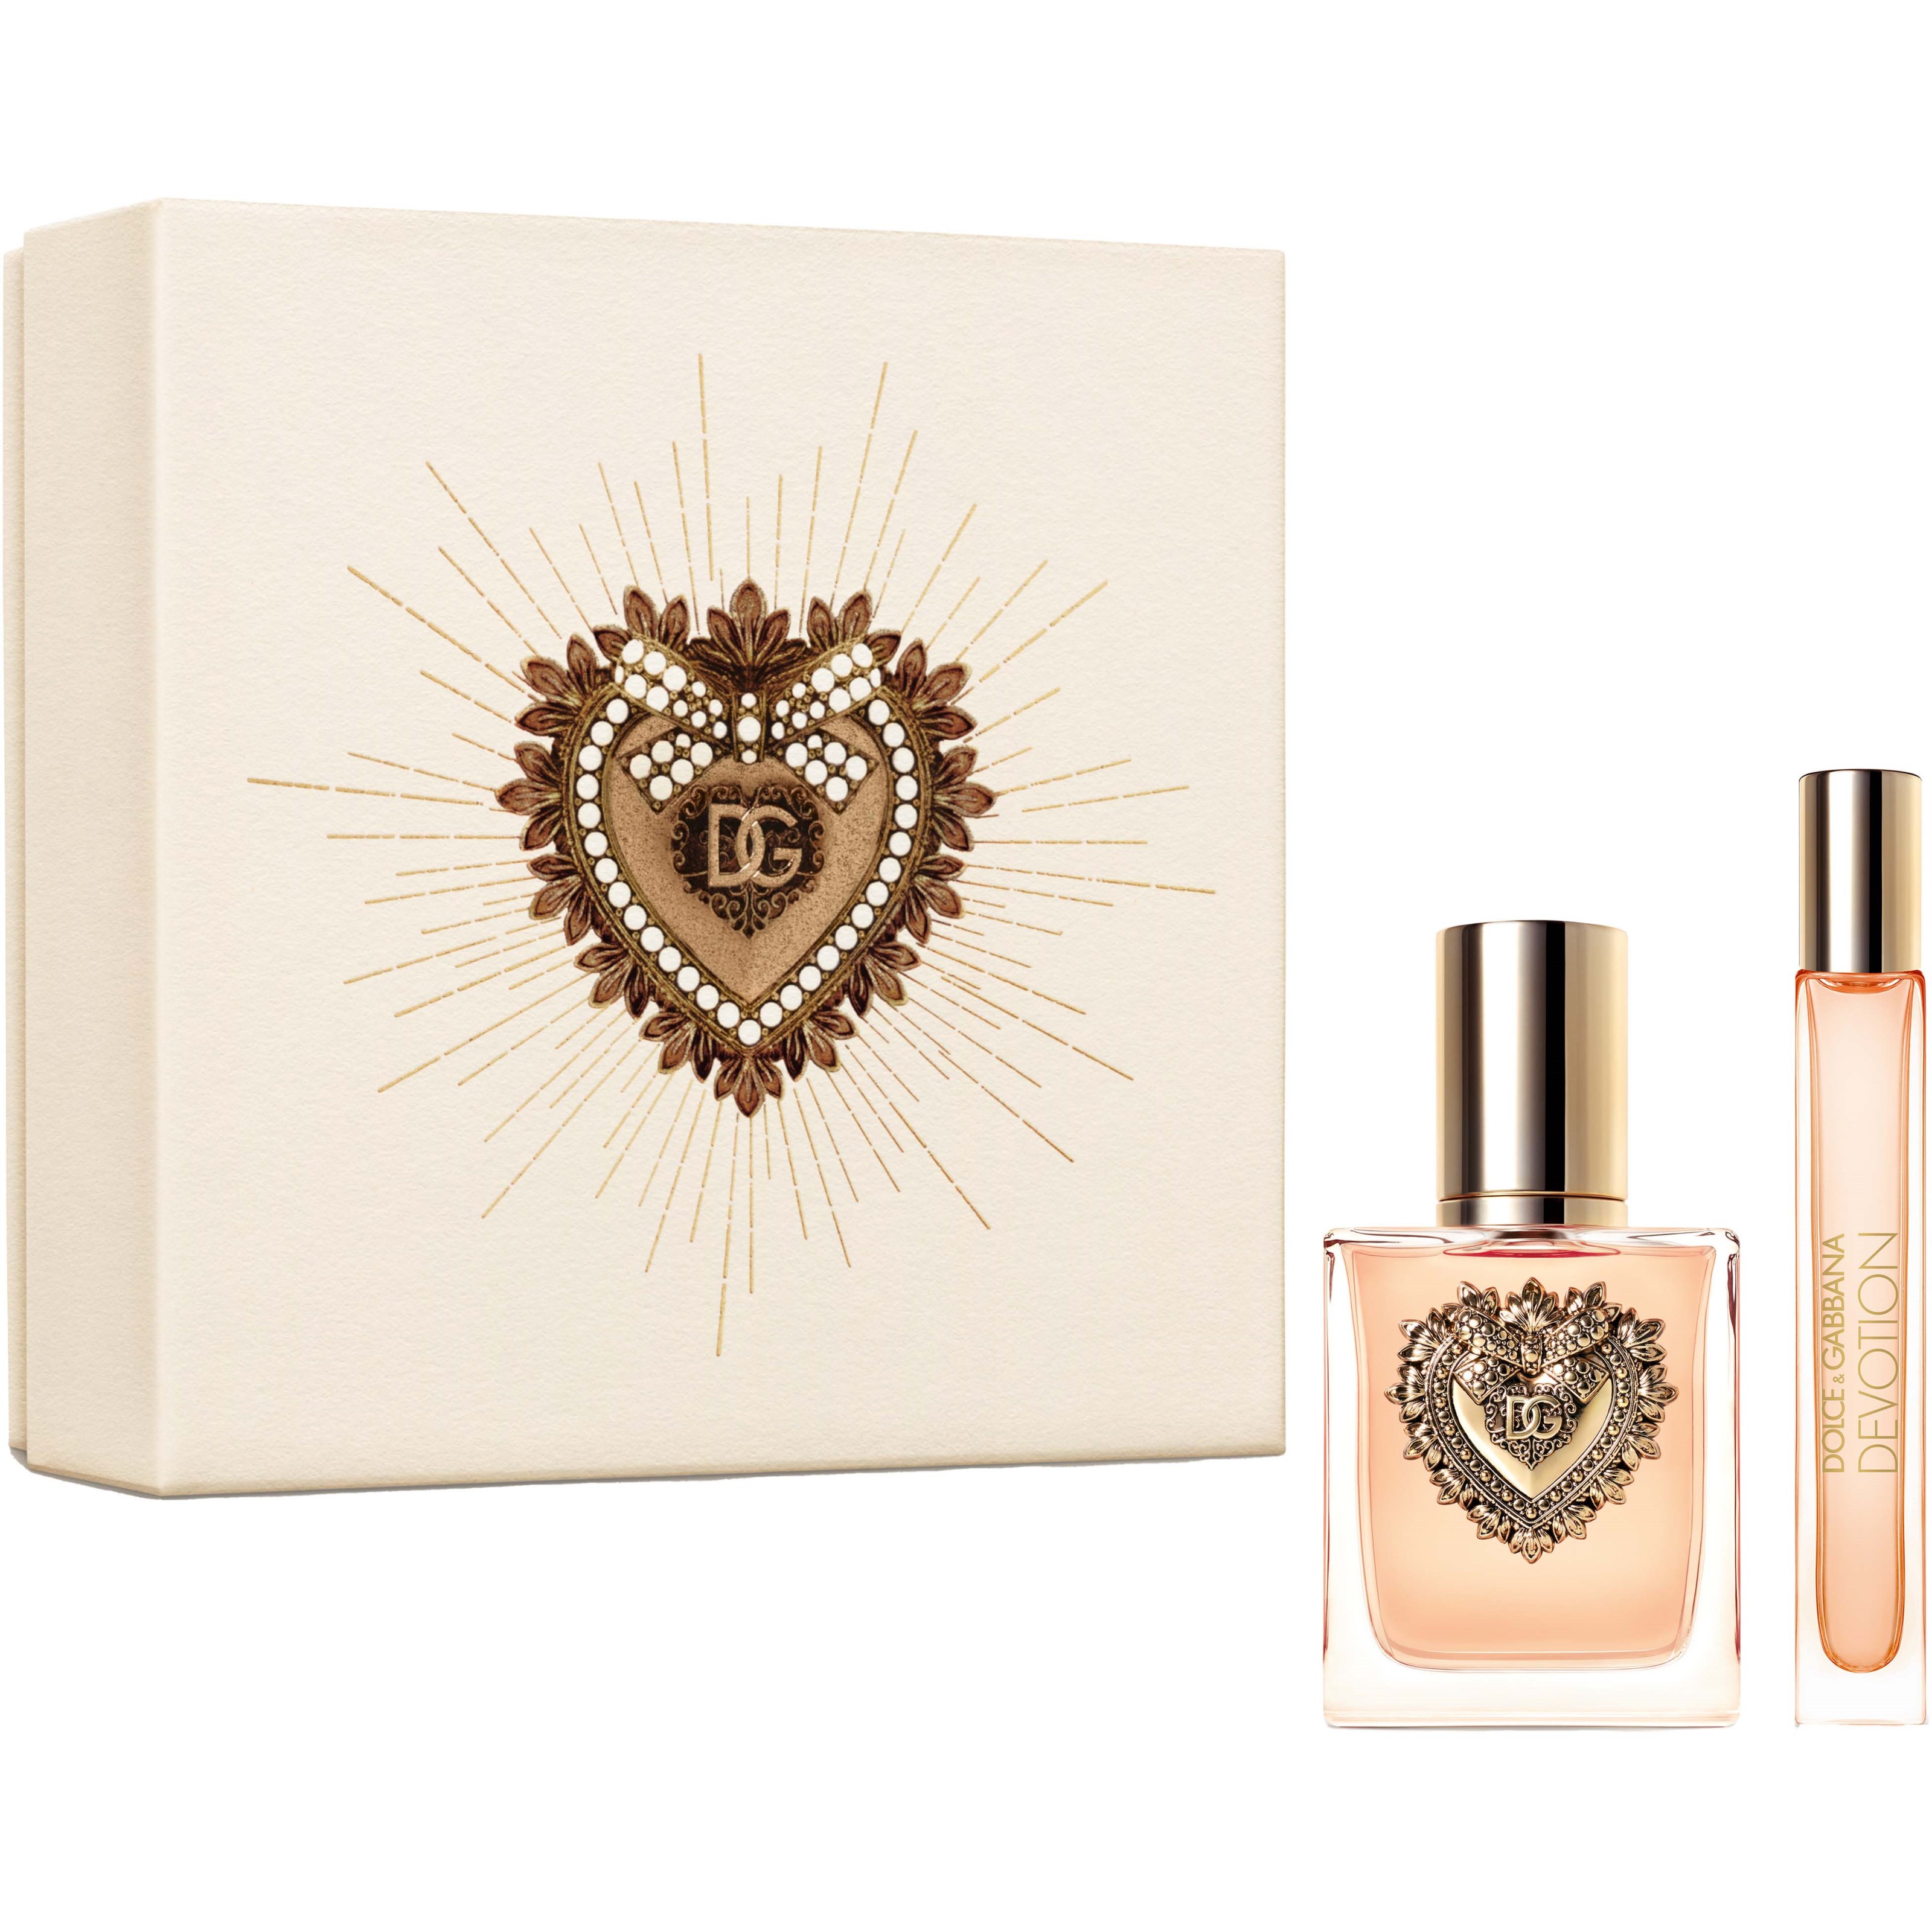 Bilde av Dolce & Gabbana Devotion Gift Set